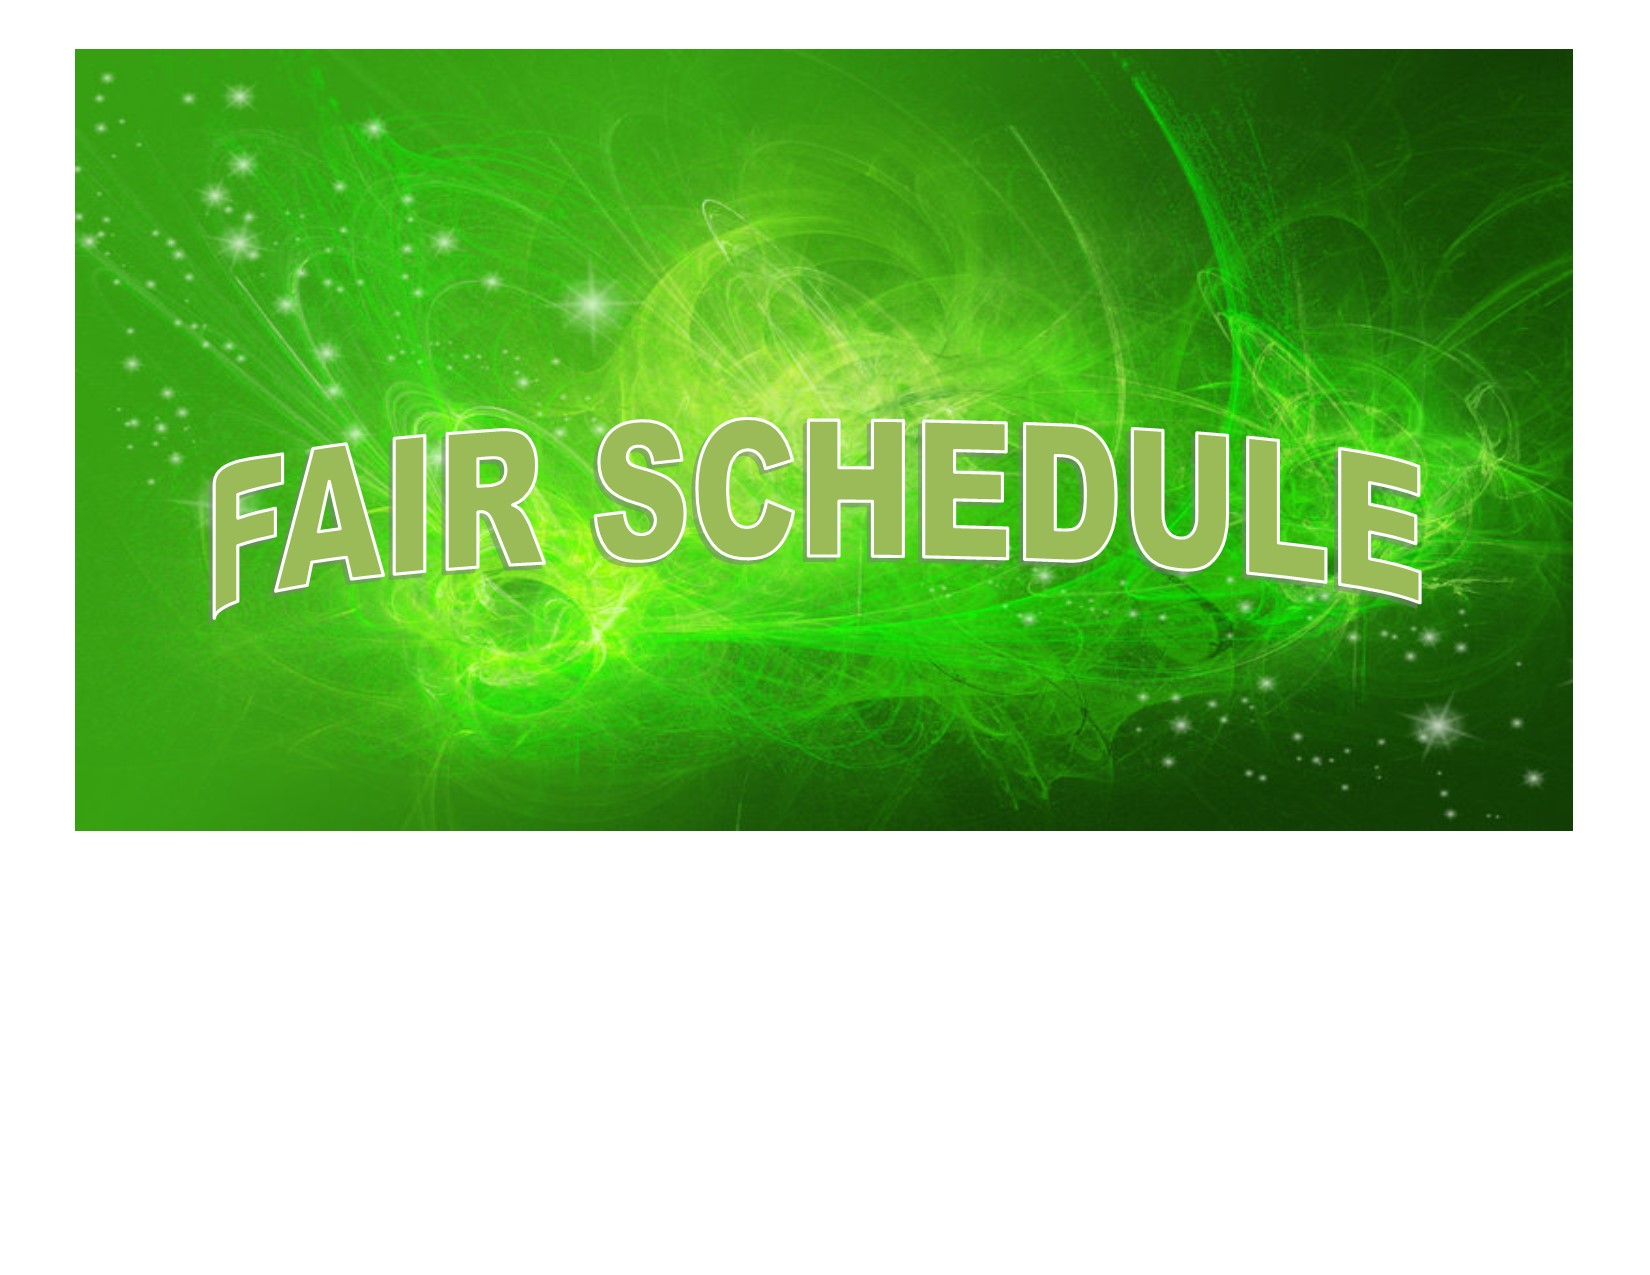 Fair schedule